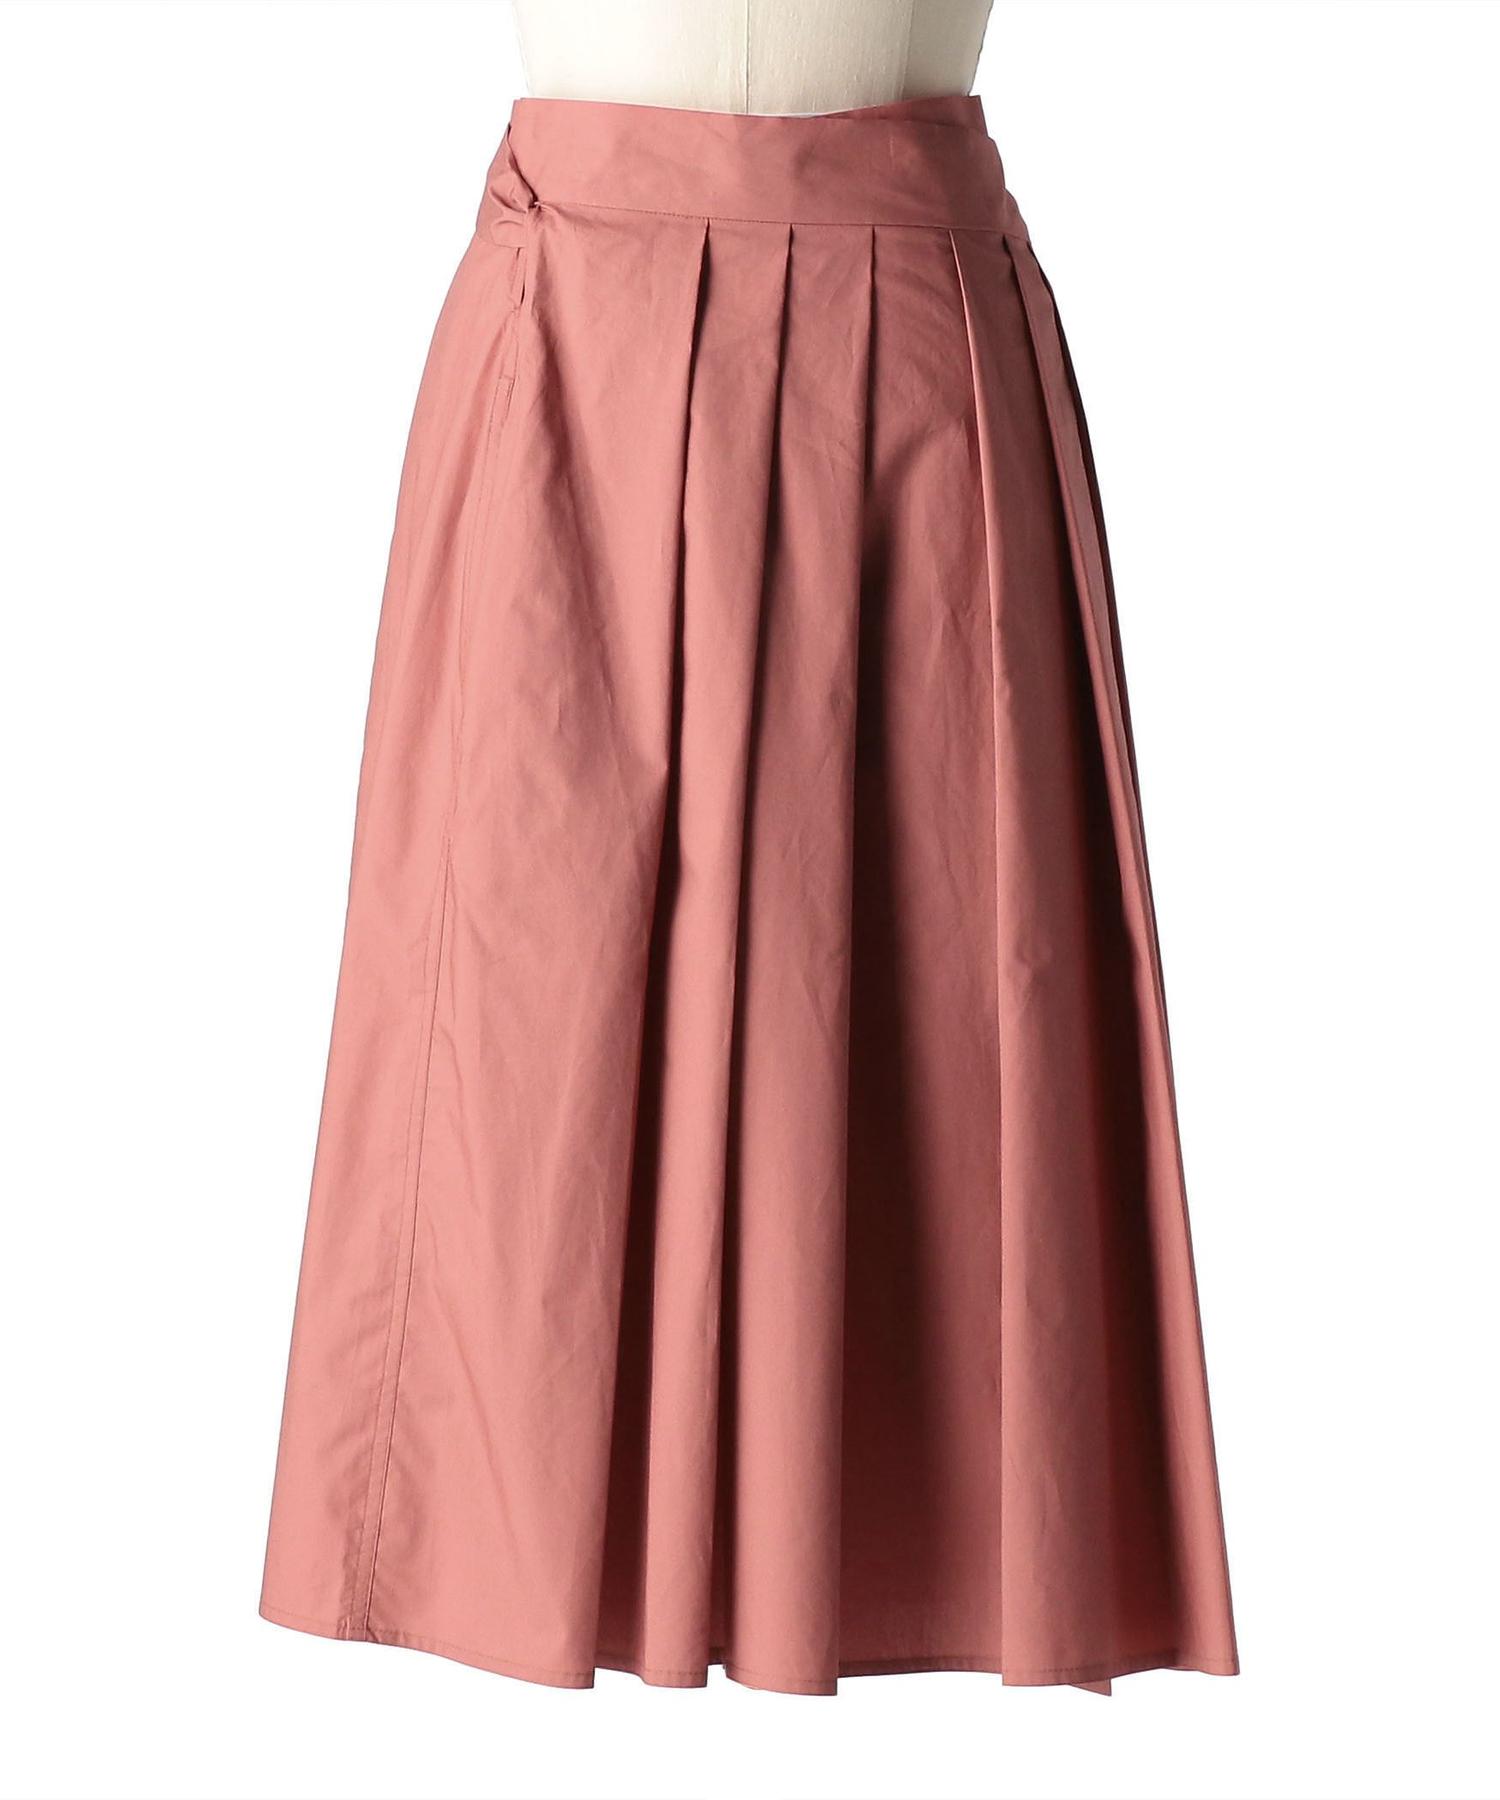 期間限定特別価格 Sofie Drawer 巻きスカート ソフィードール D'hoore ピンク ロングスカート